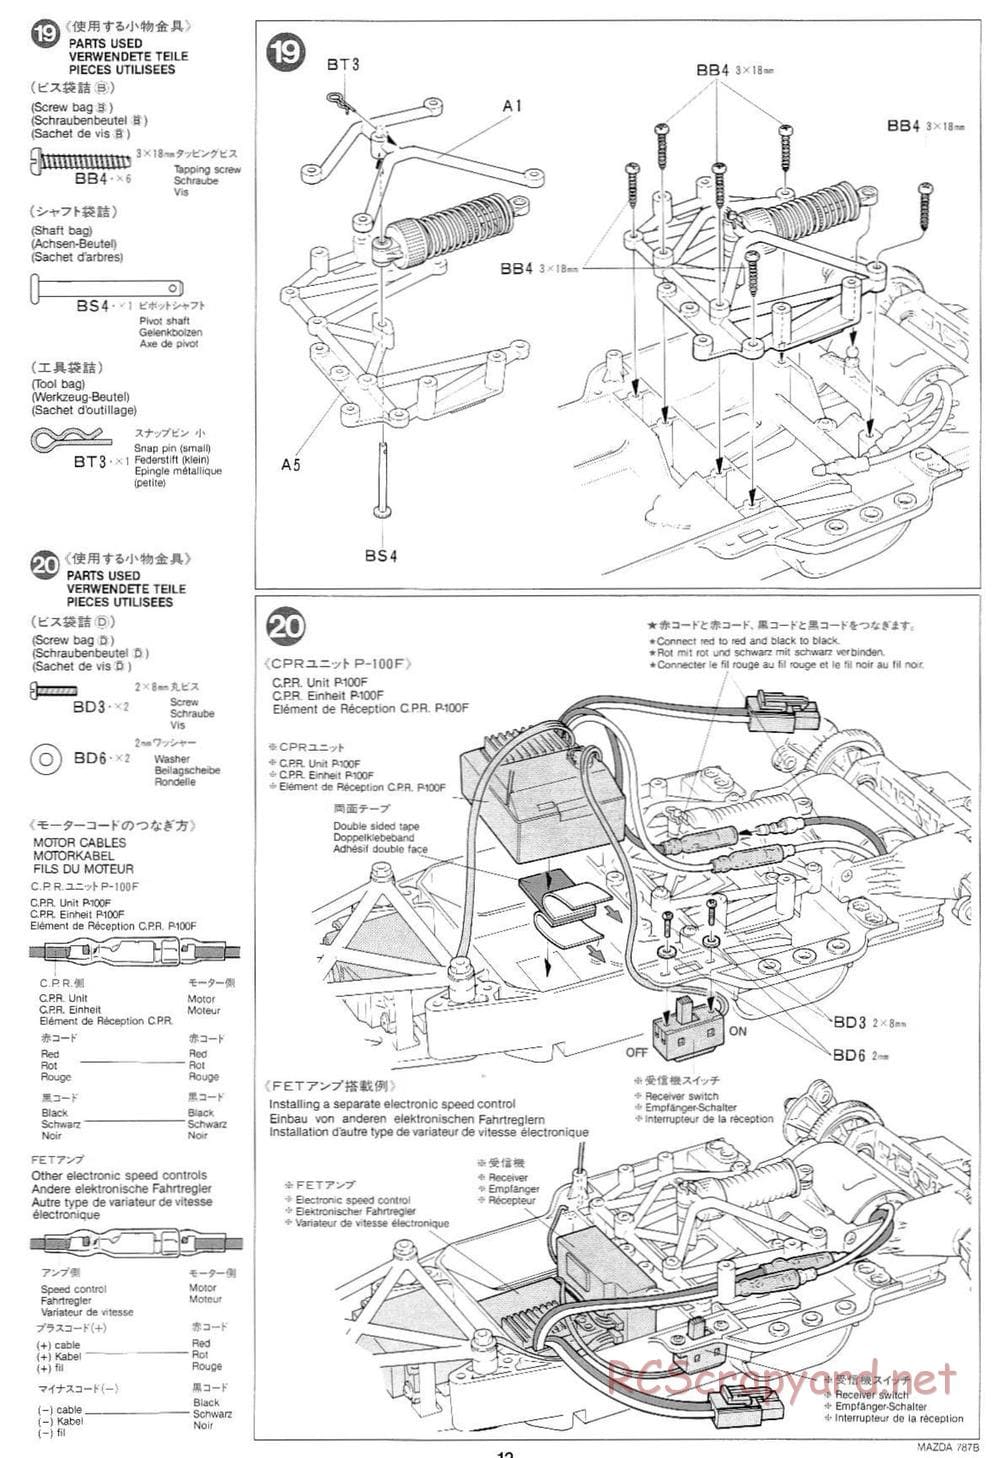 Tamiya - Mazda 787B - Group-C Chassis - Manual - Page 12